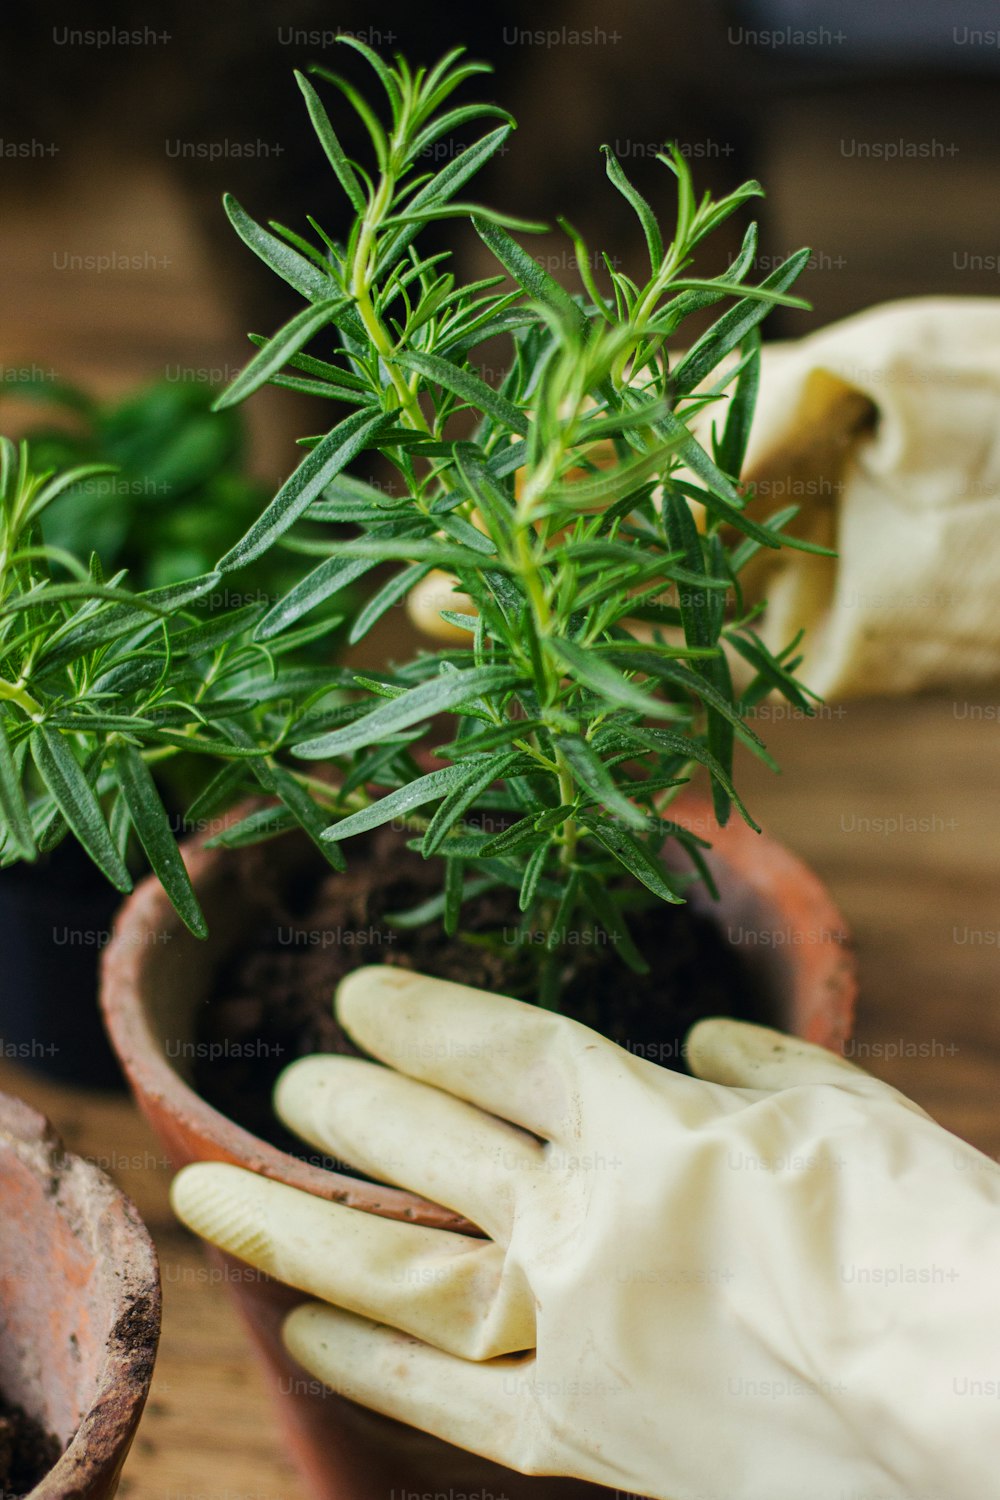 Mãos em luvas vaso de planta de alecrim em vaso de barro novo no fundo da planta de manjericão verde fresco no chão de madeira. Reenvasar e cultivar ervas aromáticas em casa. Horticultura